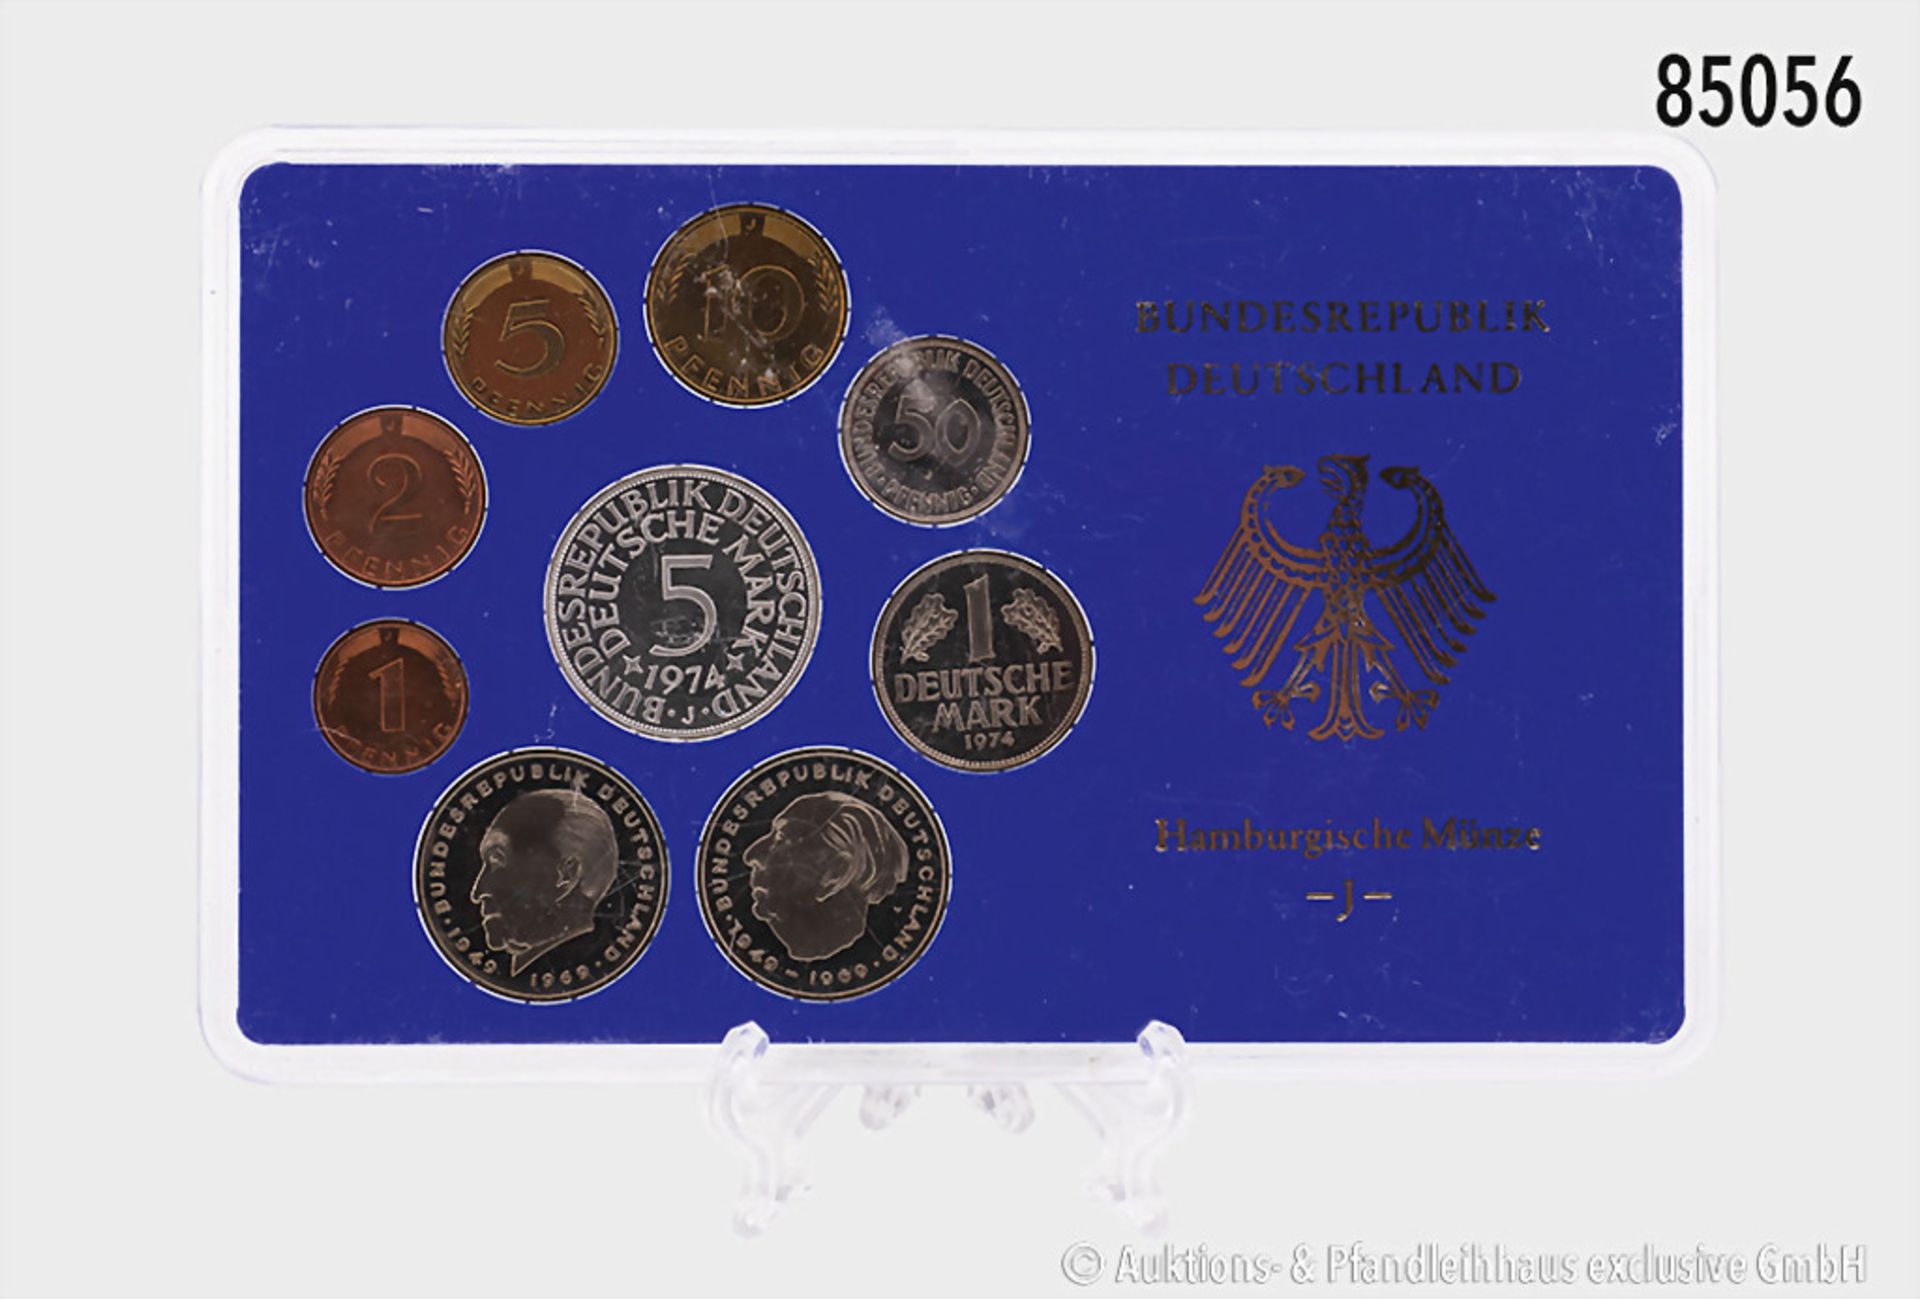 Konv. BRD, Kursmünzensätze 1974 G und J, inkl. Silberadler, PP, in OVP, OVP mit kleinen ... - Bild 2 aus 2